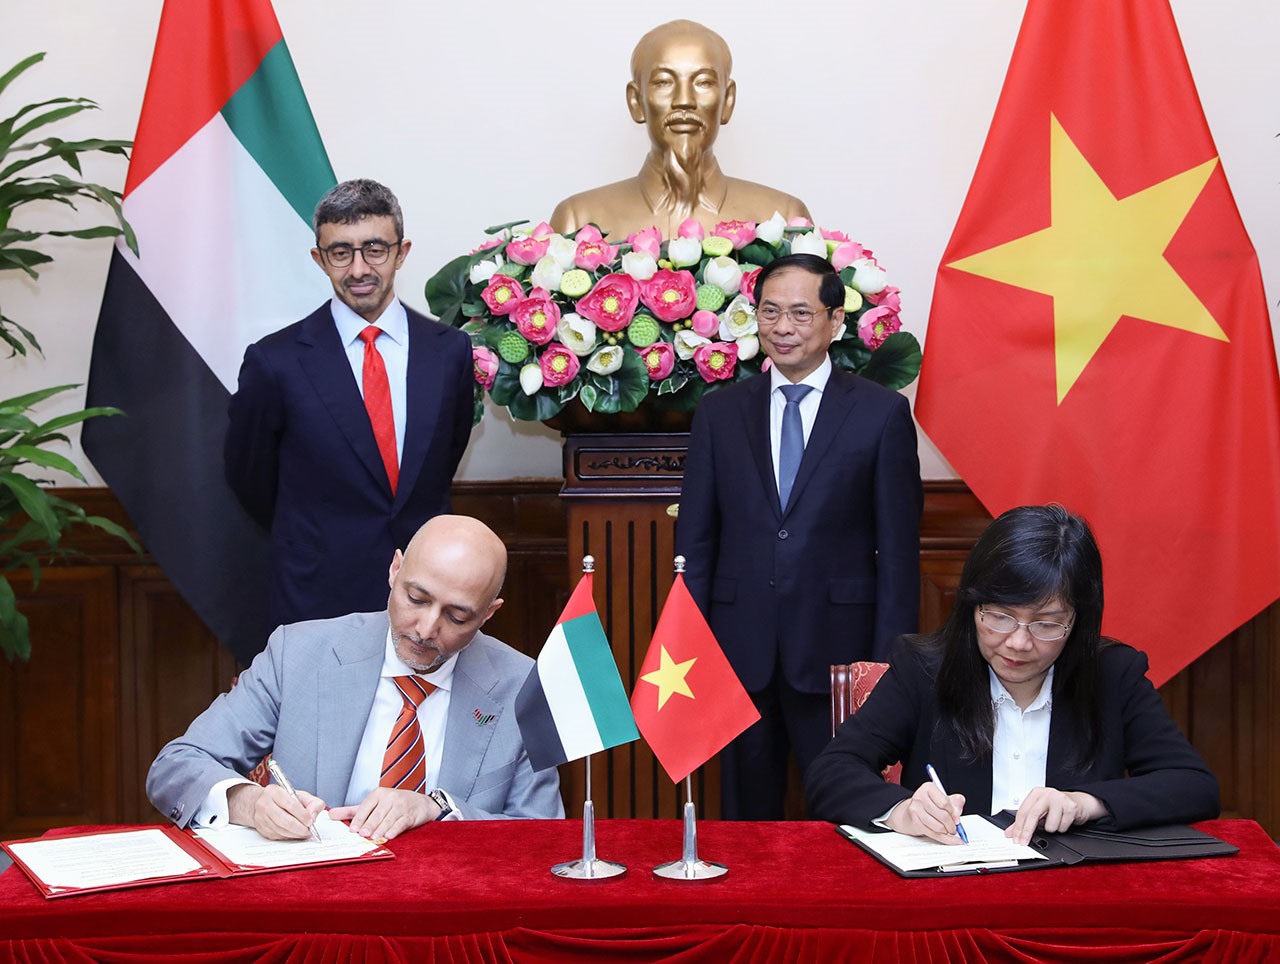 Lễ ký kết Bản ghi nhớ hợp tác giữa Học viện Ngoại giao Việt Nam và Học viện Ngoại giao UAE Anwar Gargash. Ảnh: Bộ Ngoại giao